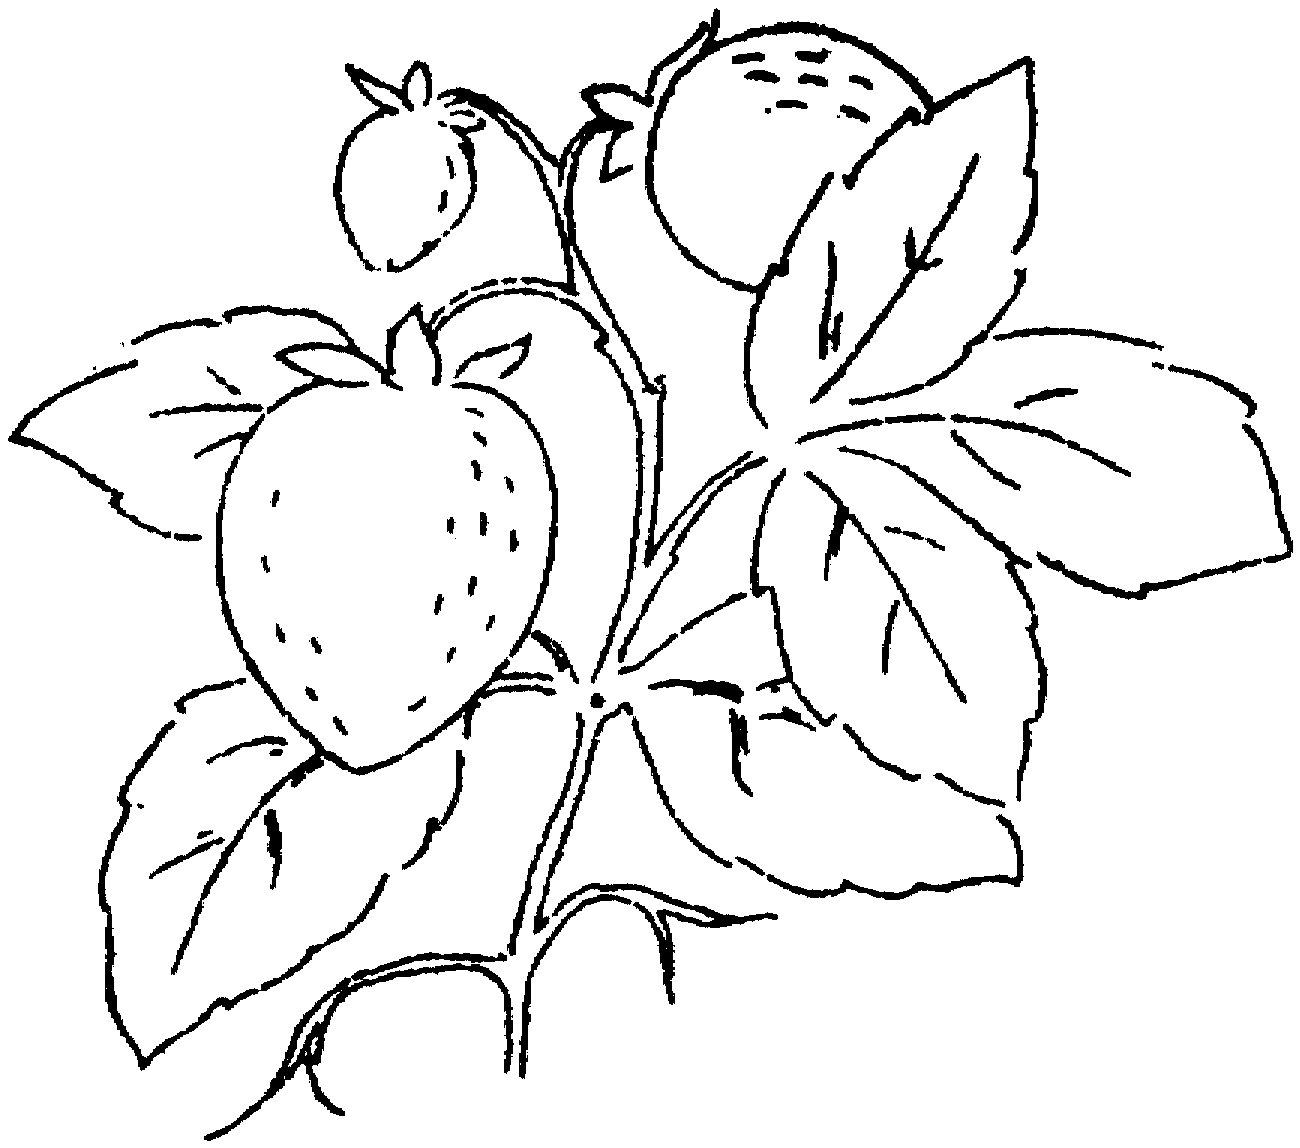 草莓树简笔画水果图片